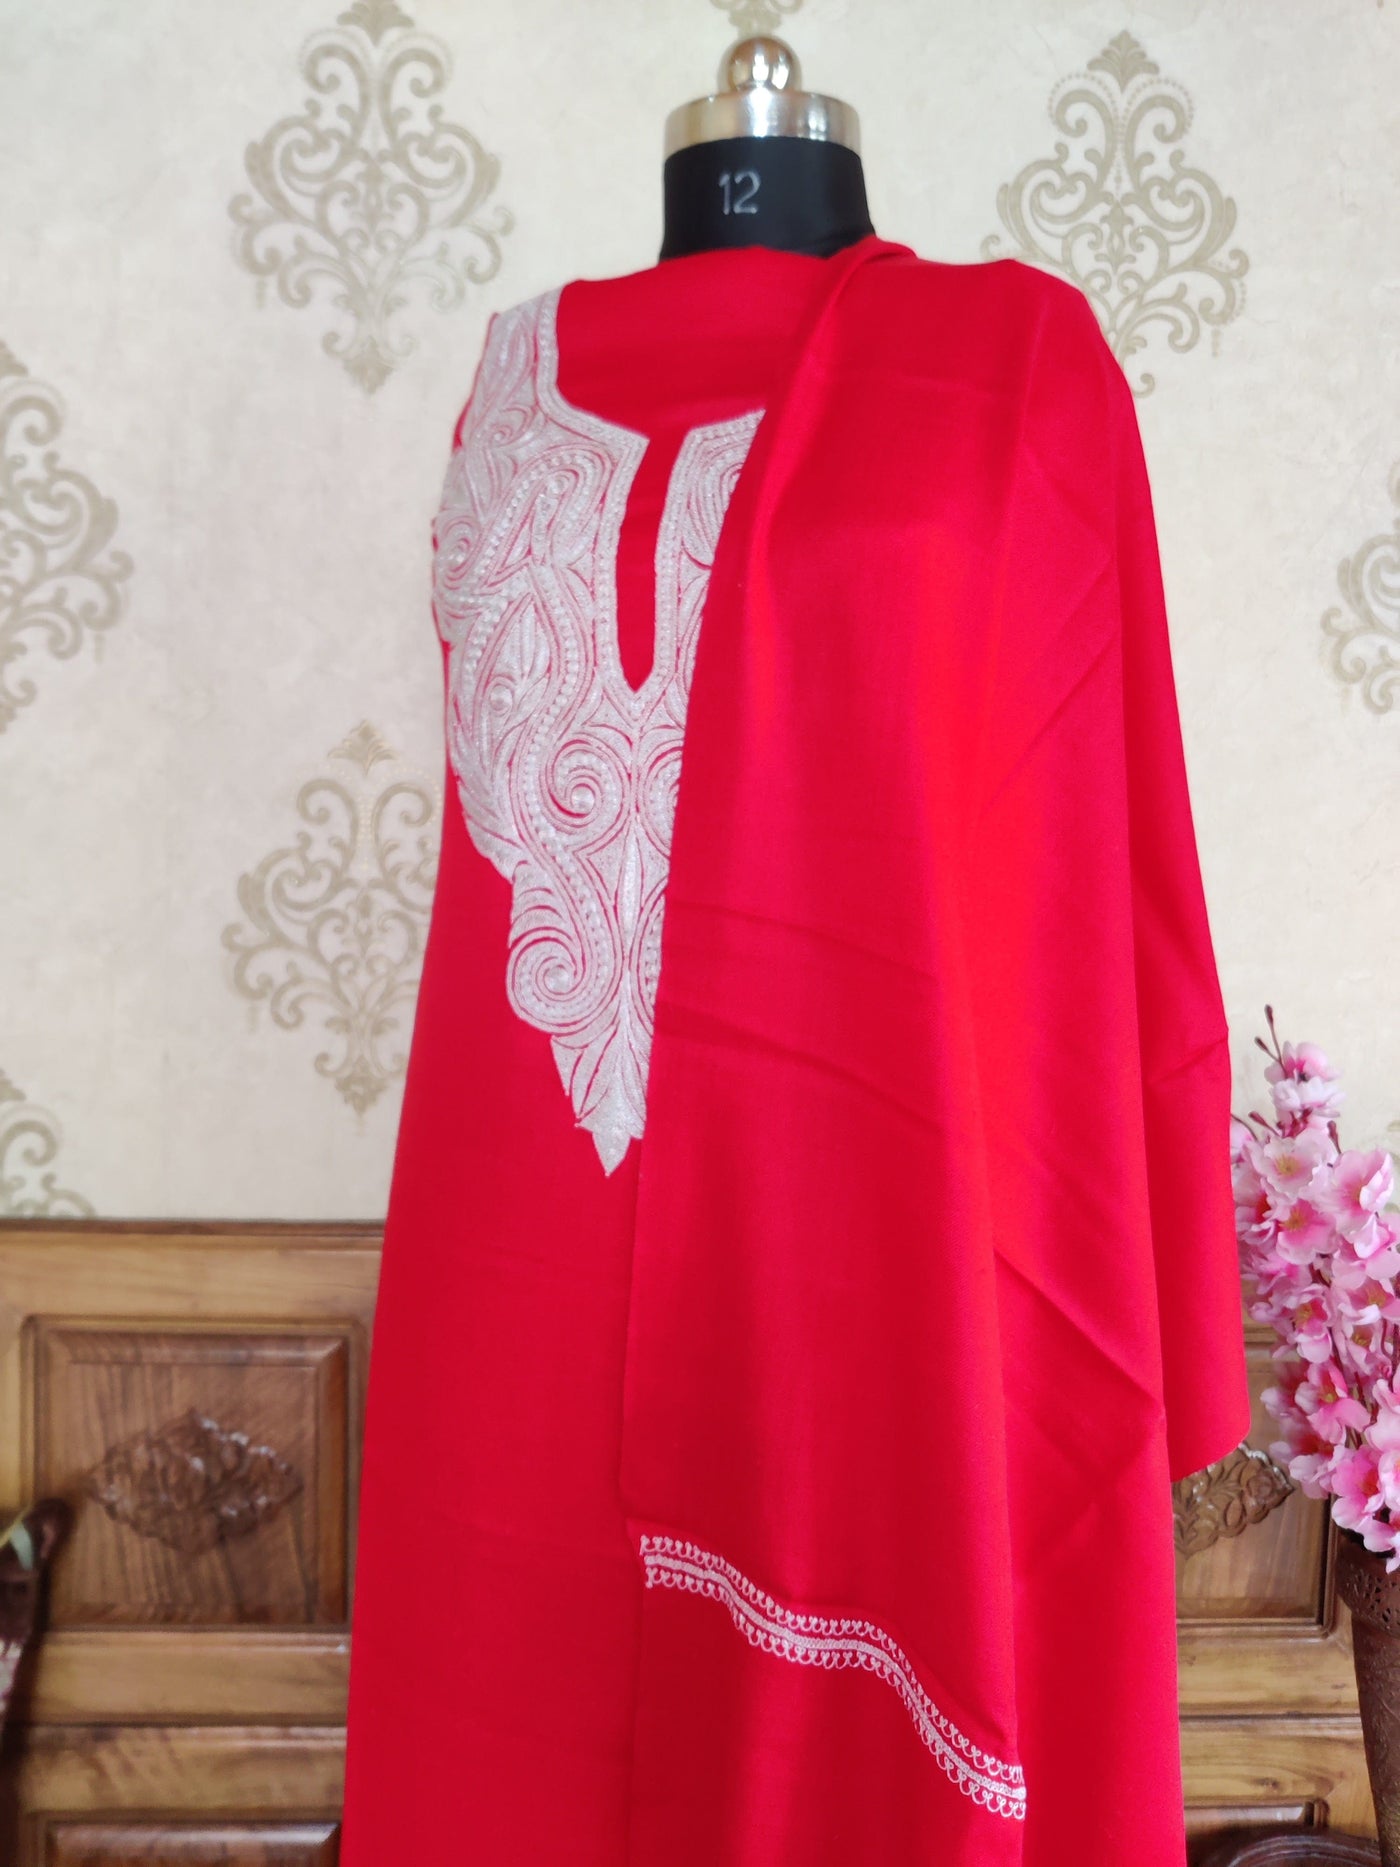 Kashmiri Suit Woollen With Tilla Embroidery on Neck  (3 pcs) Woolen Suit KashmKari MaroonKashmiri Woollen Suit With Tilla Embroidery jaal design (3 pcs).  Kashmiri Suit online